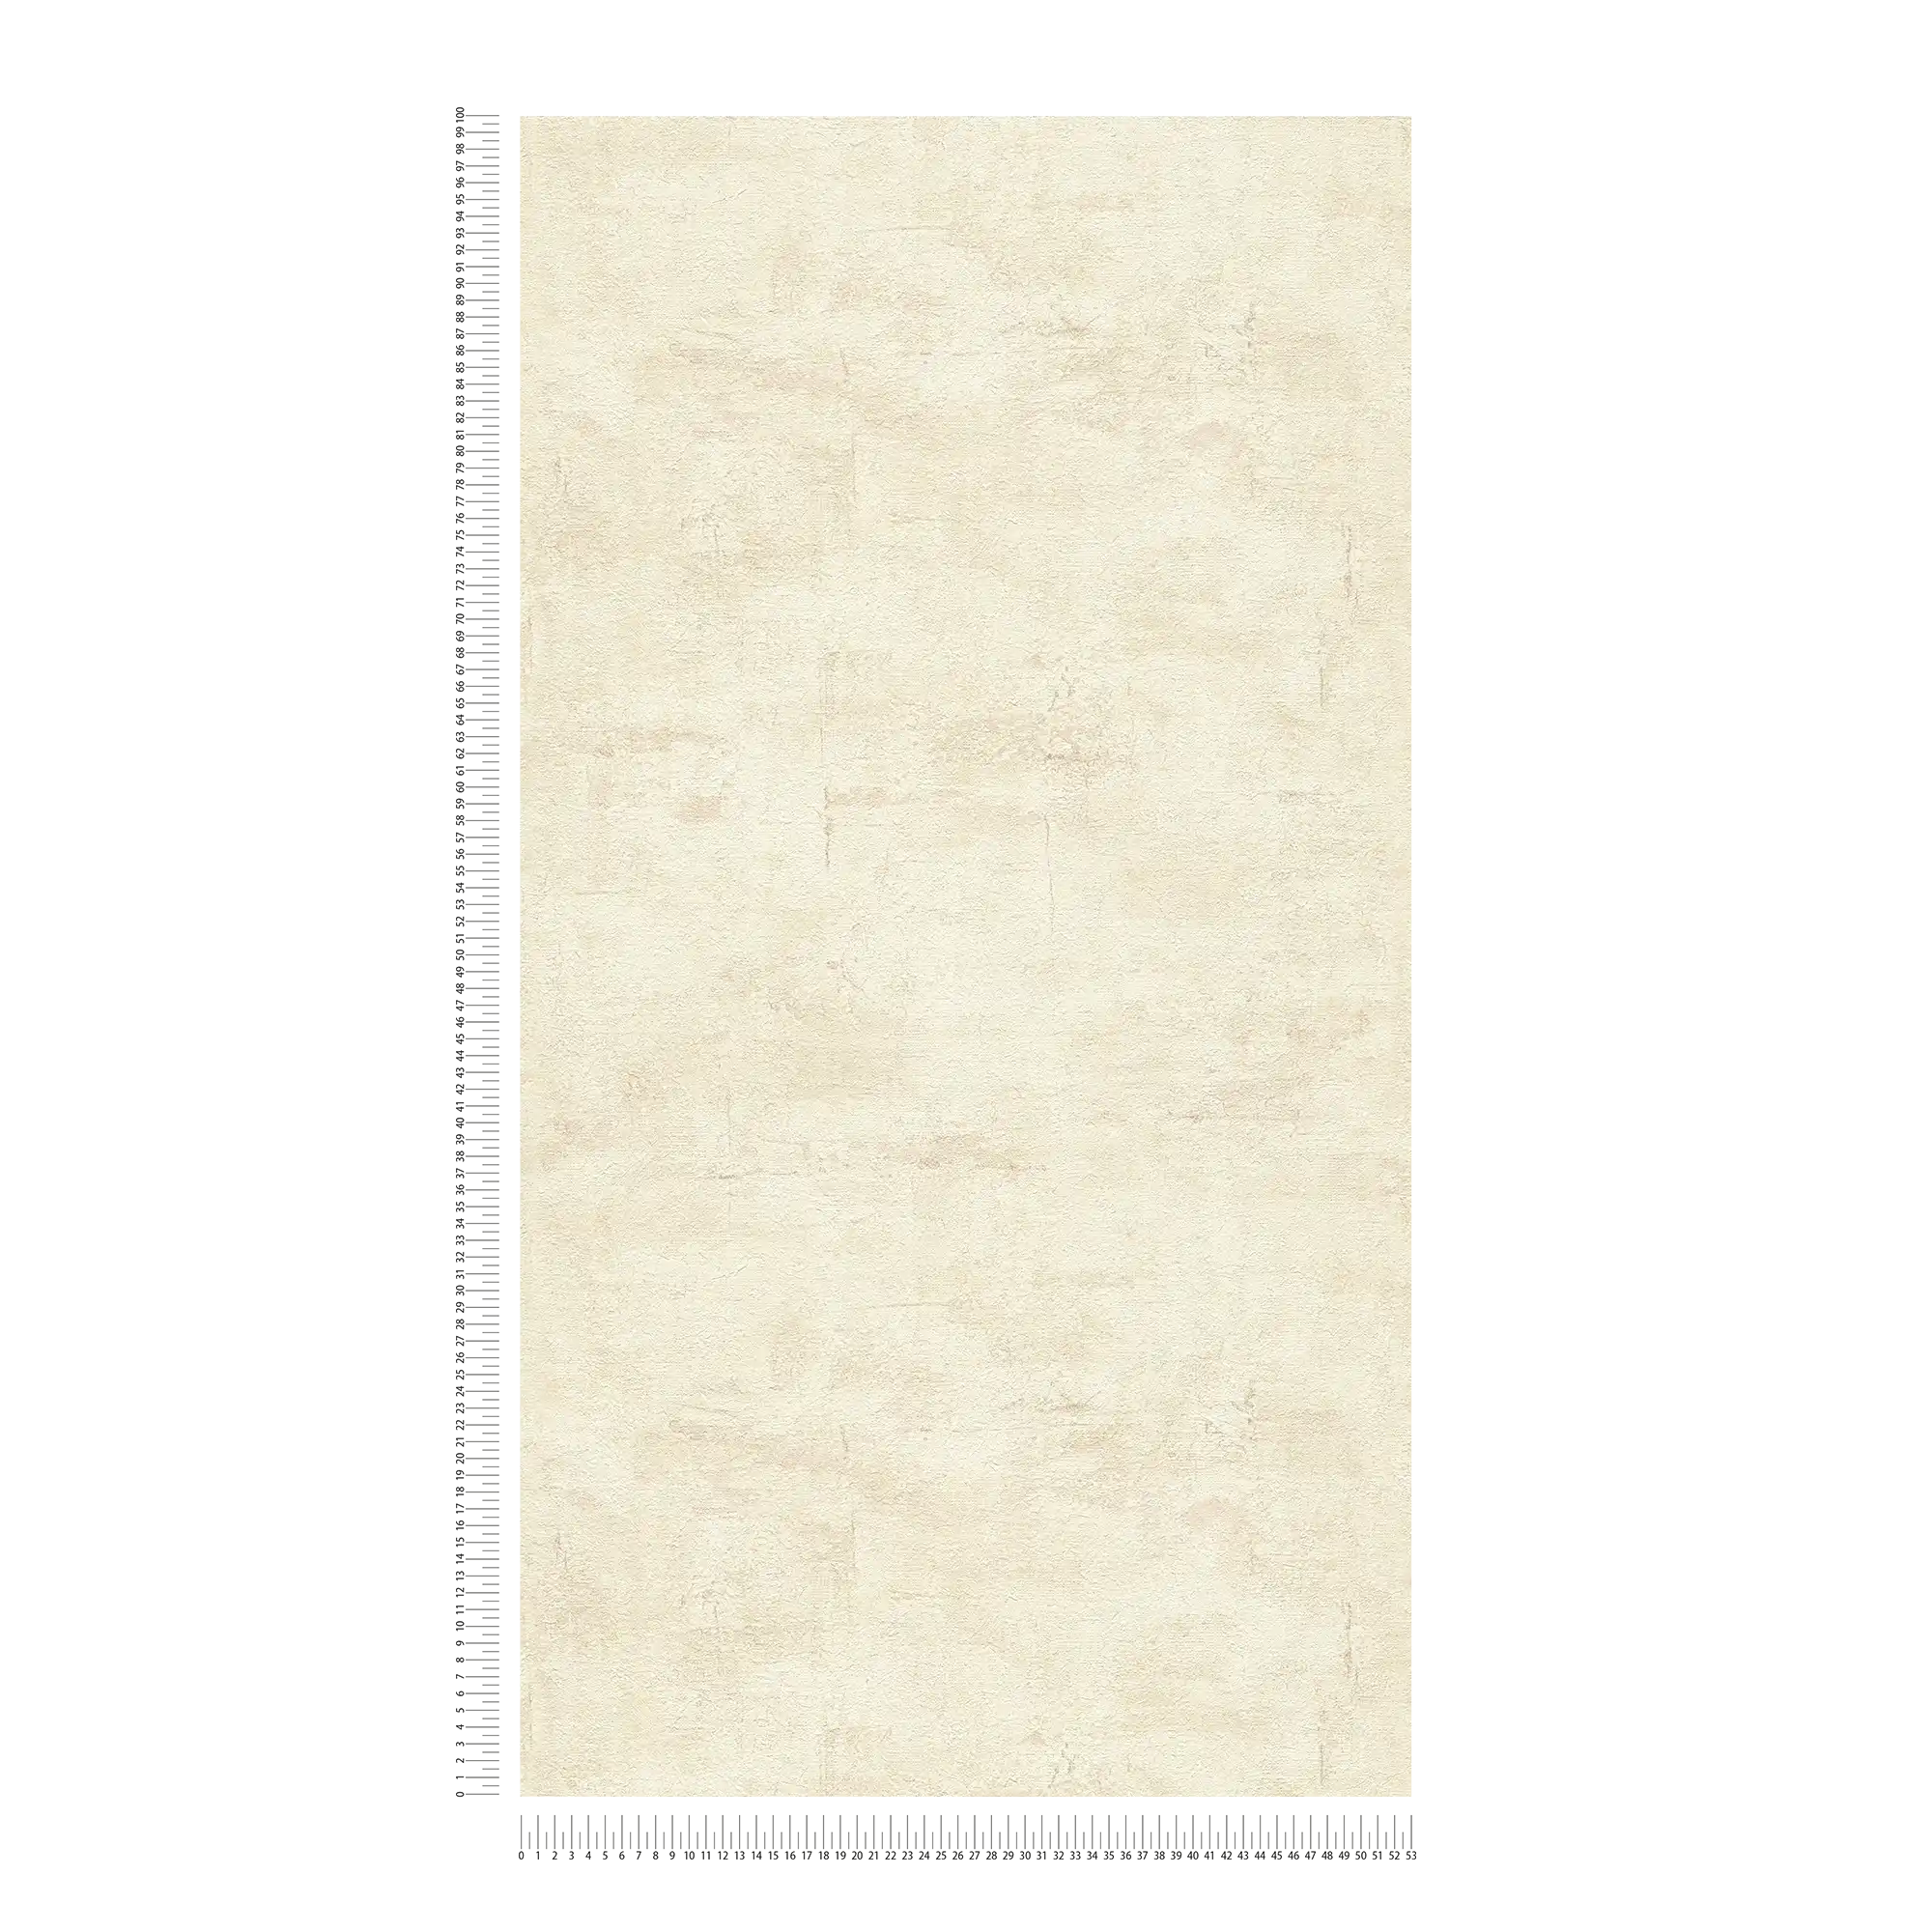             Papier peint texturé à l'aspect plâtre beige clair - beige, marron
        